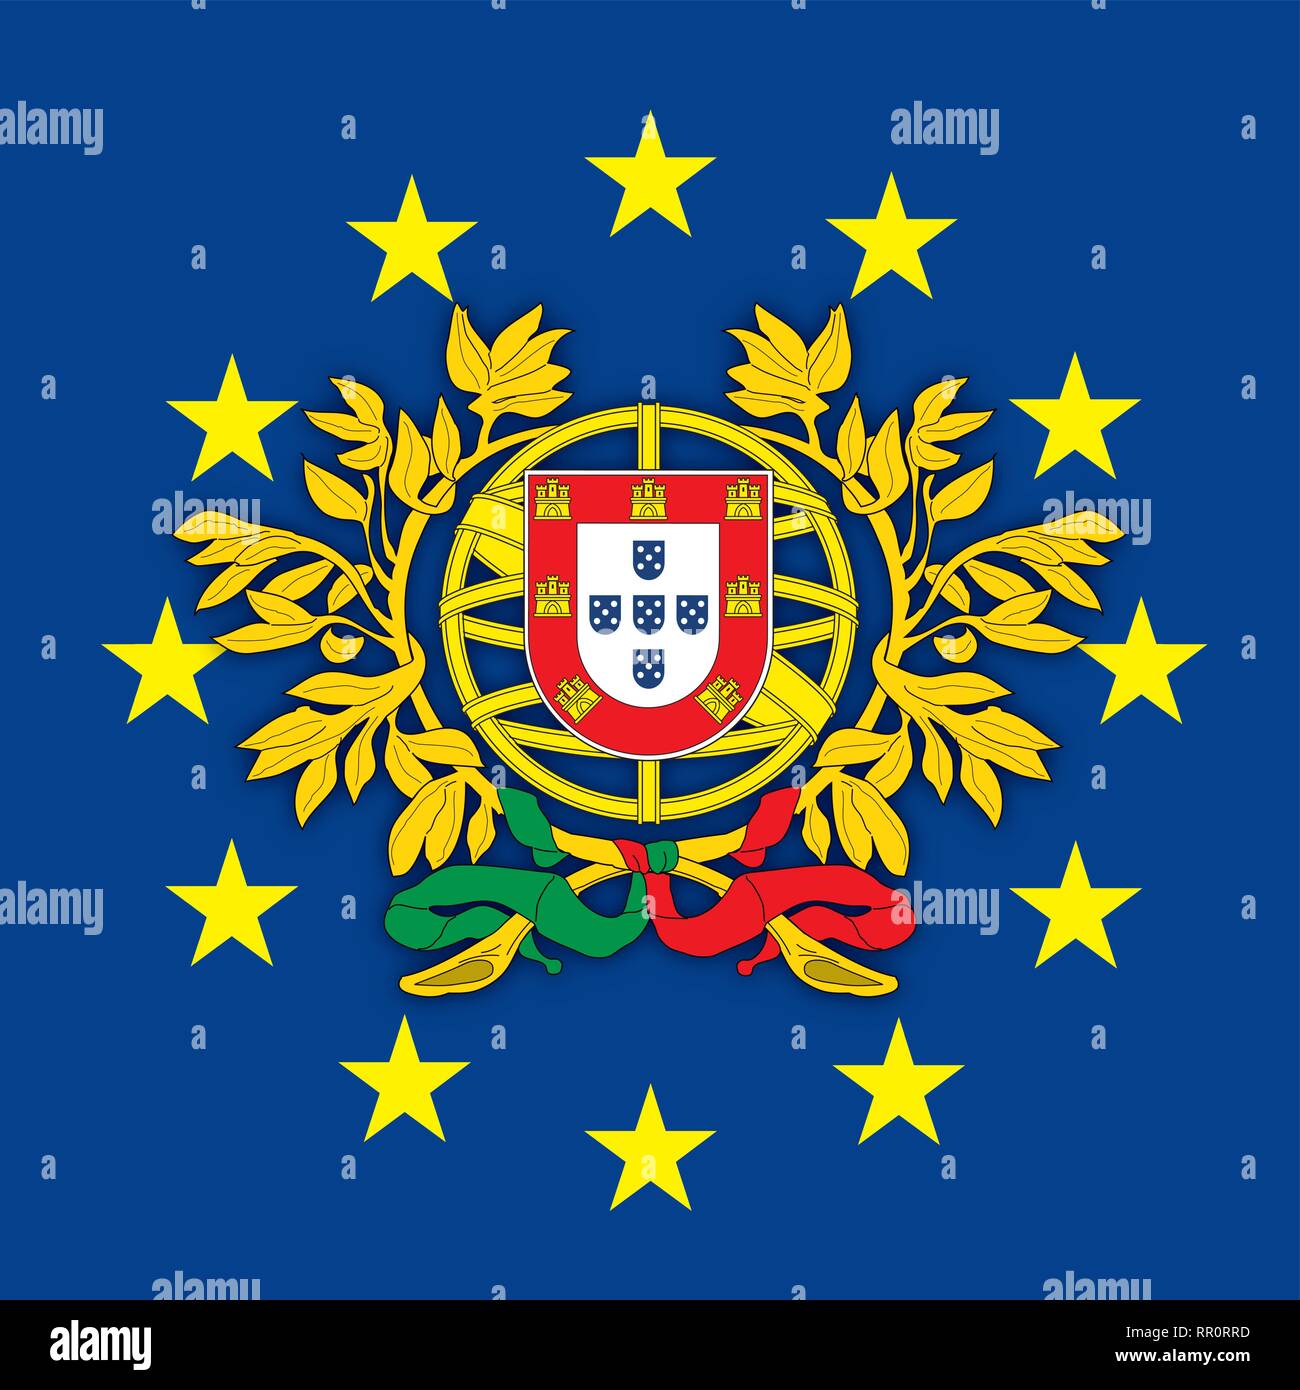 Austria stemma sulla bandiera dell'Unione europea, illustrazione vettoriale Portogallo stemma sulla bandiera dell'Unione europea, illustrazione vettoriale Illustrazione Vettoriale